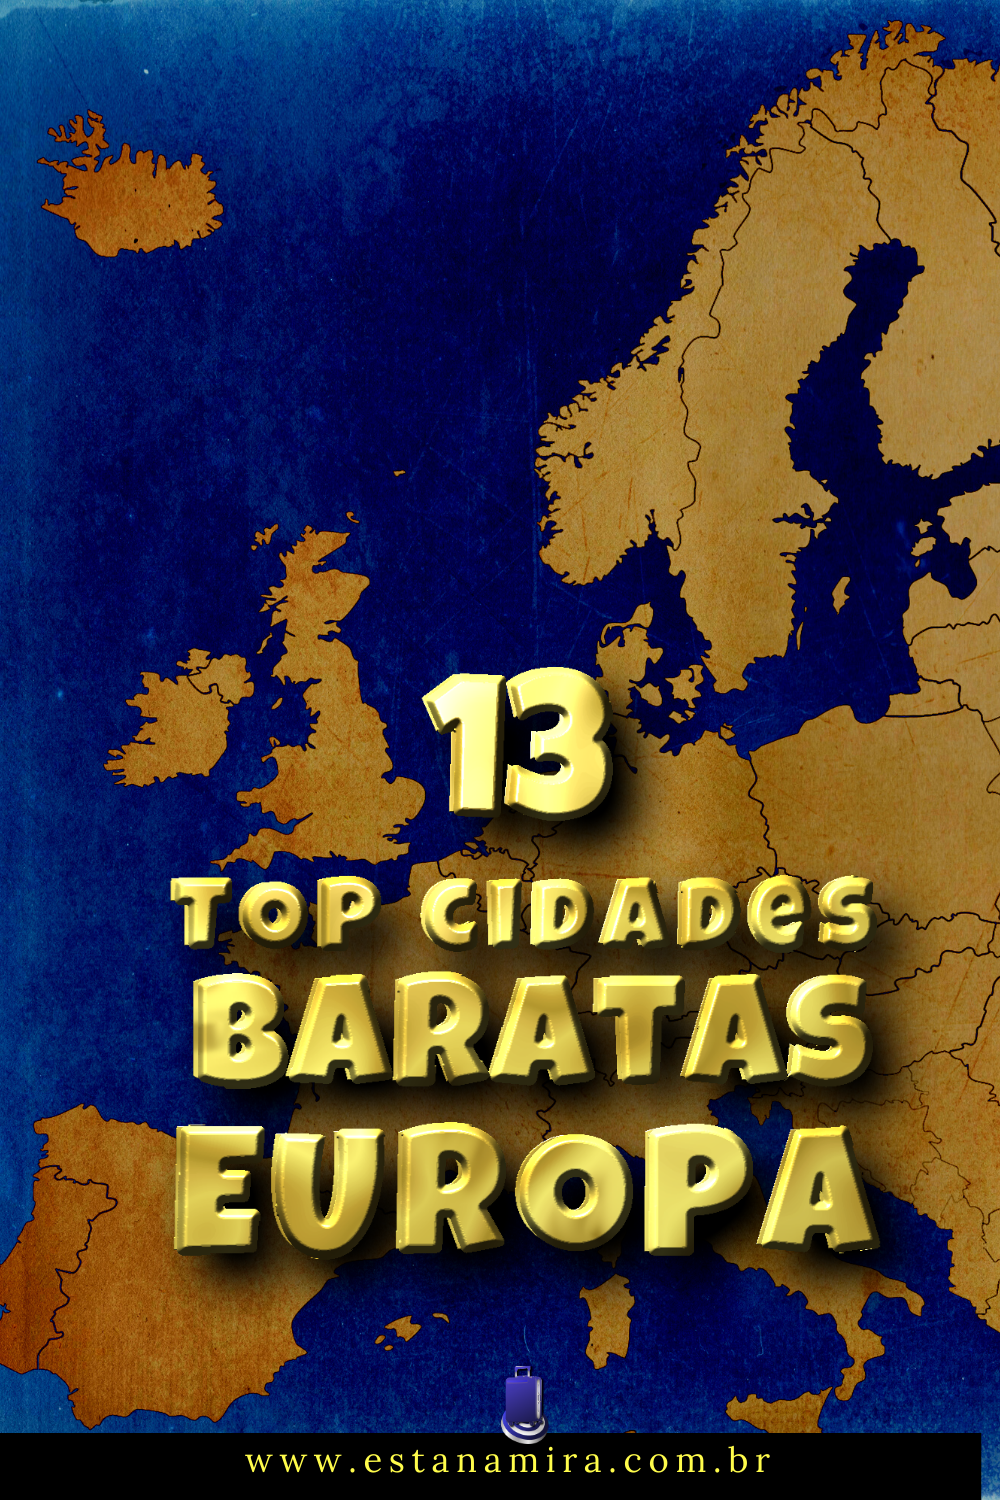 13 TOP cidades baratas para viajar na Europa em sua Eurotrip em 2022